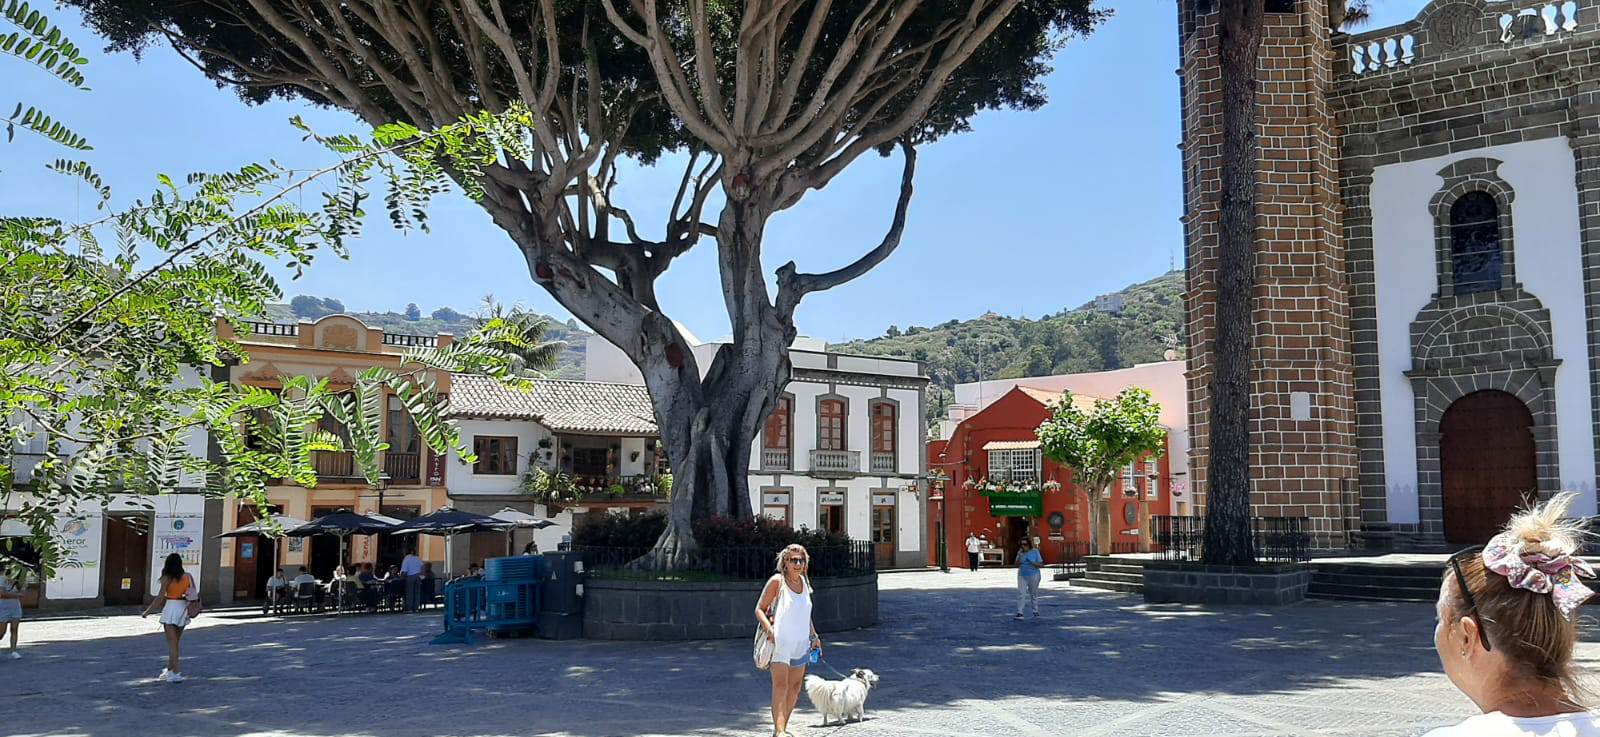 Viviana, 64 anni: a Gran Canaria ho scoperto la mia spiritualità